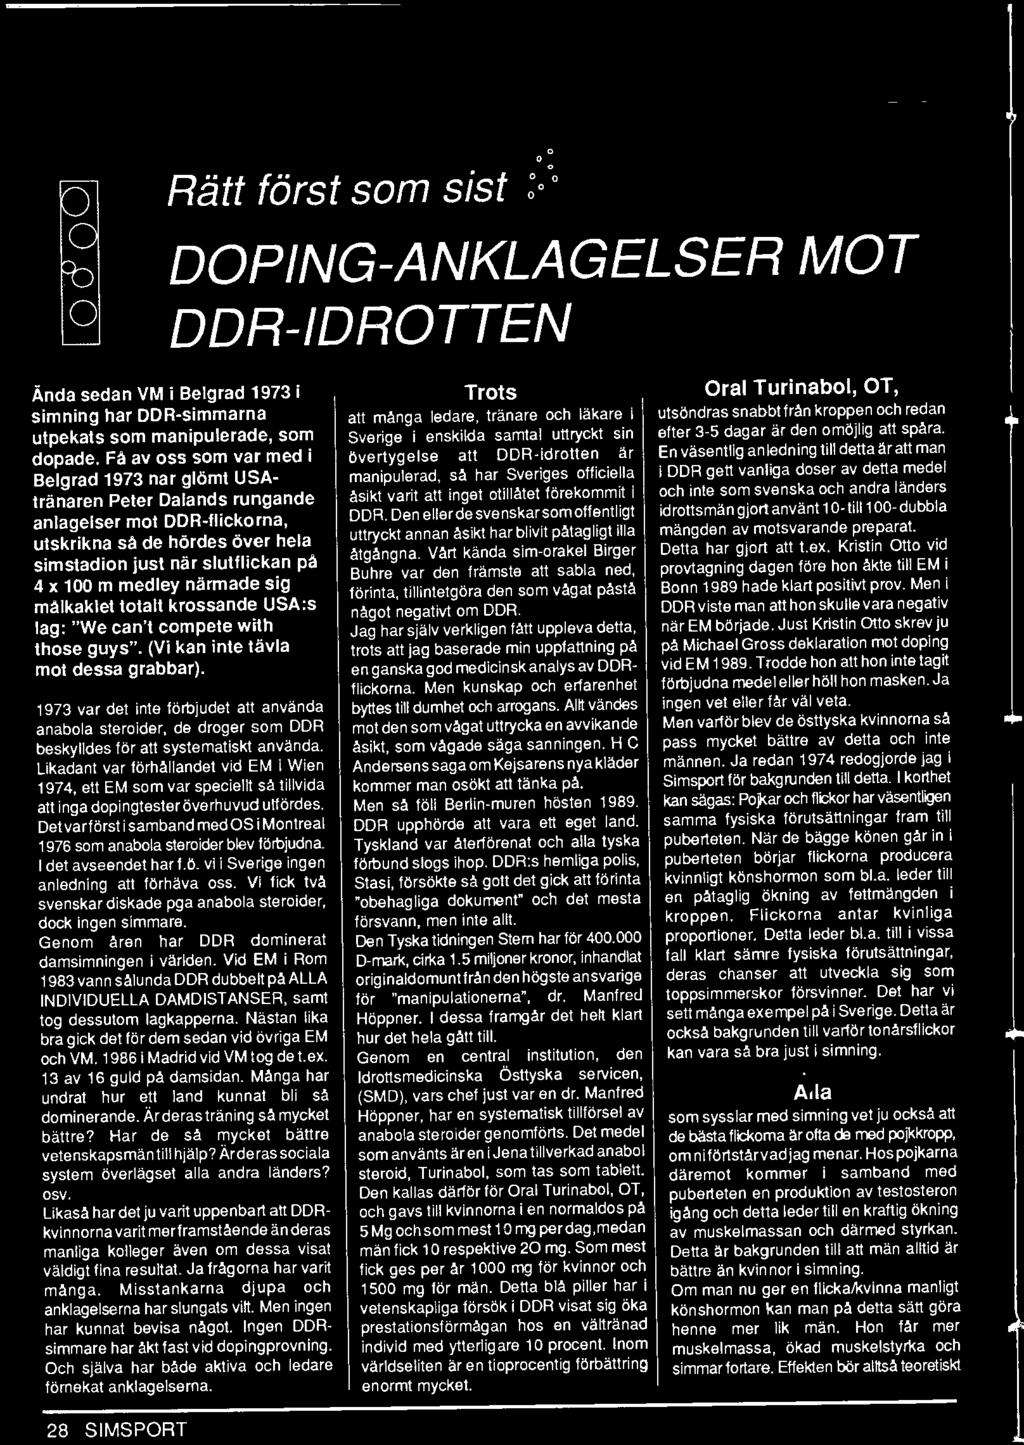 1973 var det inte förbjudet att använda anabola steroider, de droger som DDR beskylldes för att systematiskt använda.